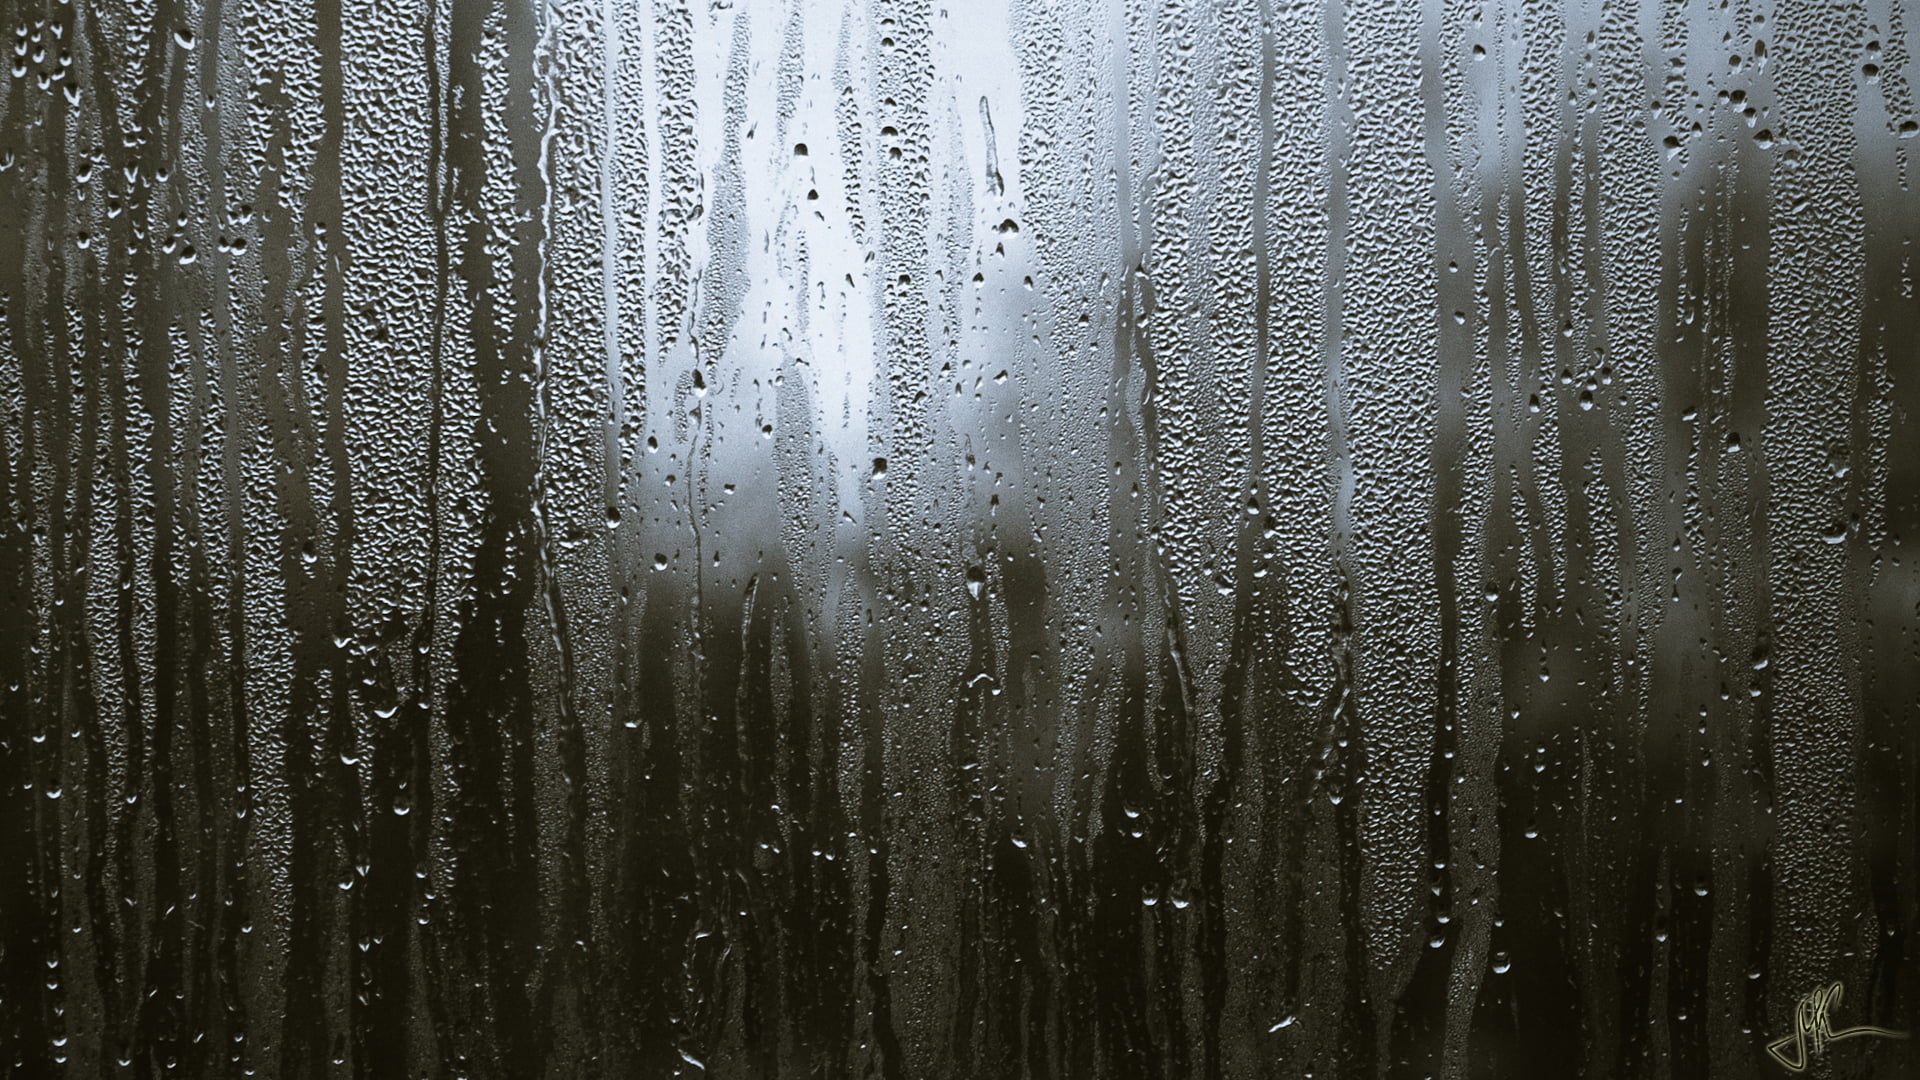 Water Drops On Glass - HD Wallpaper 